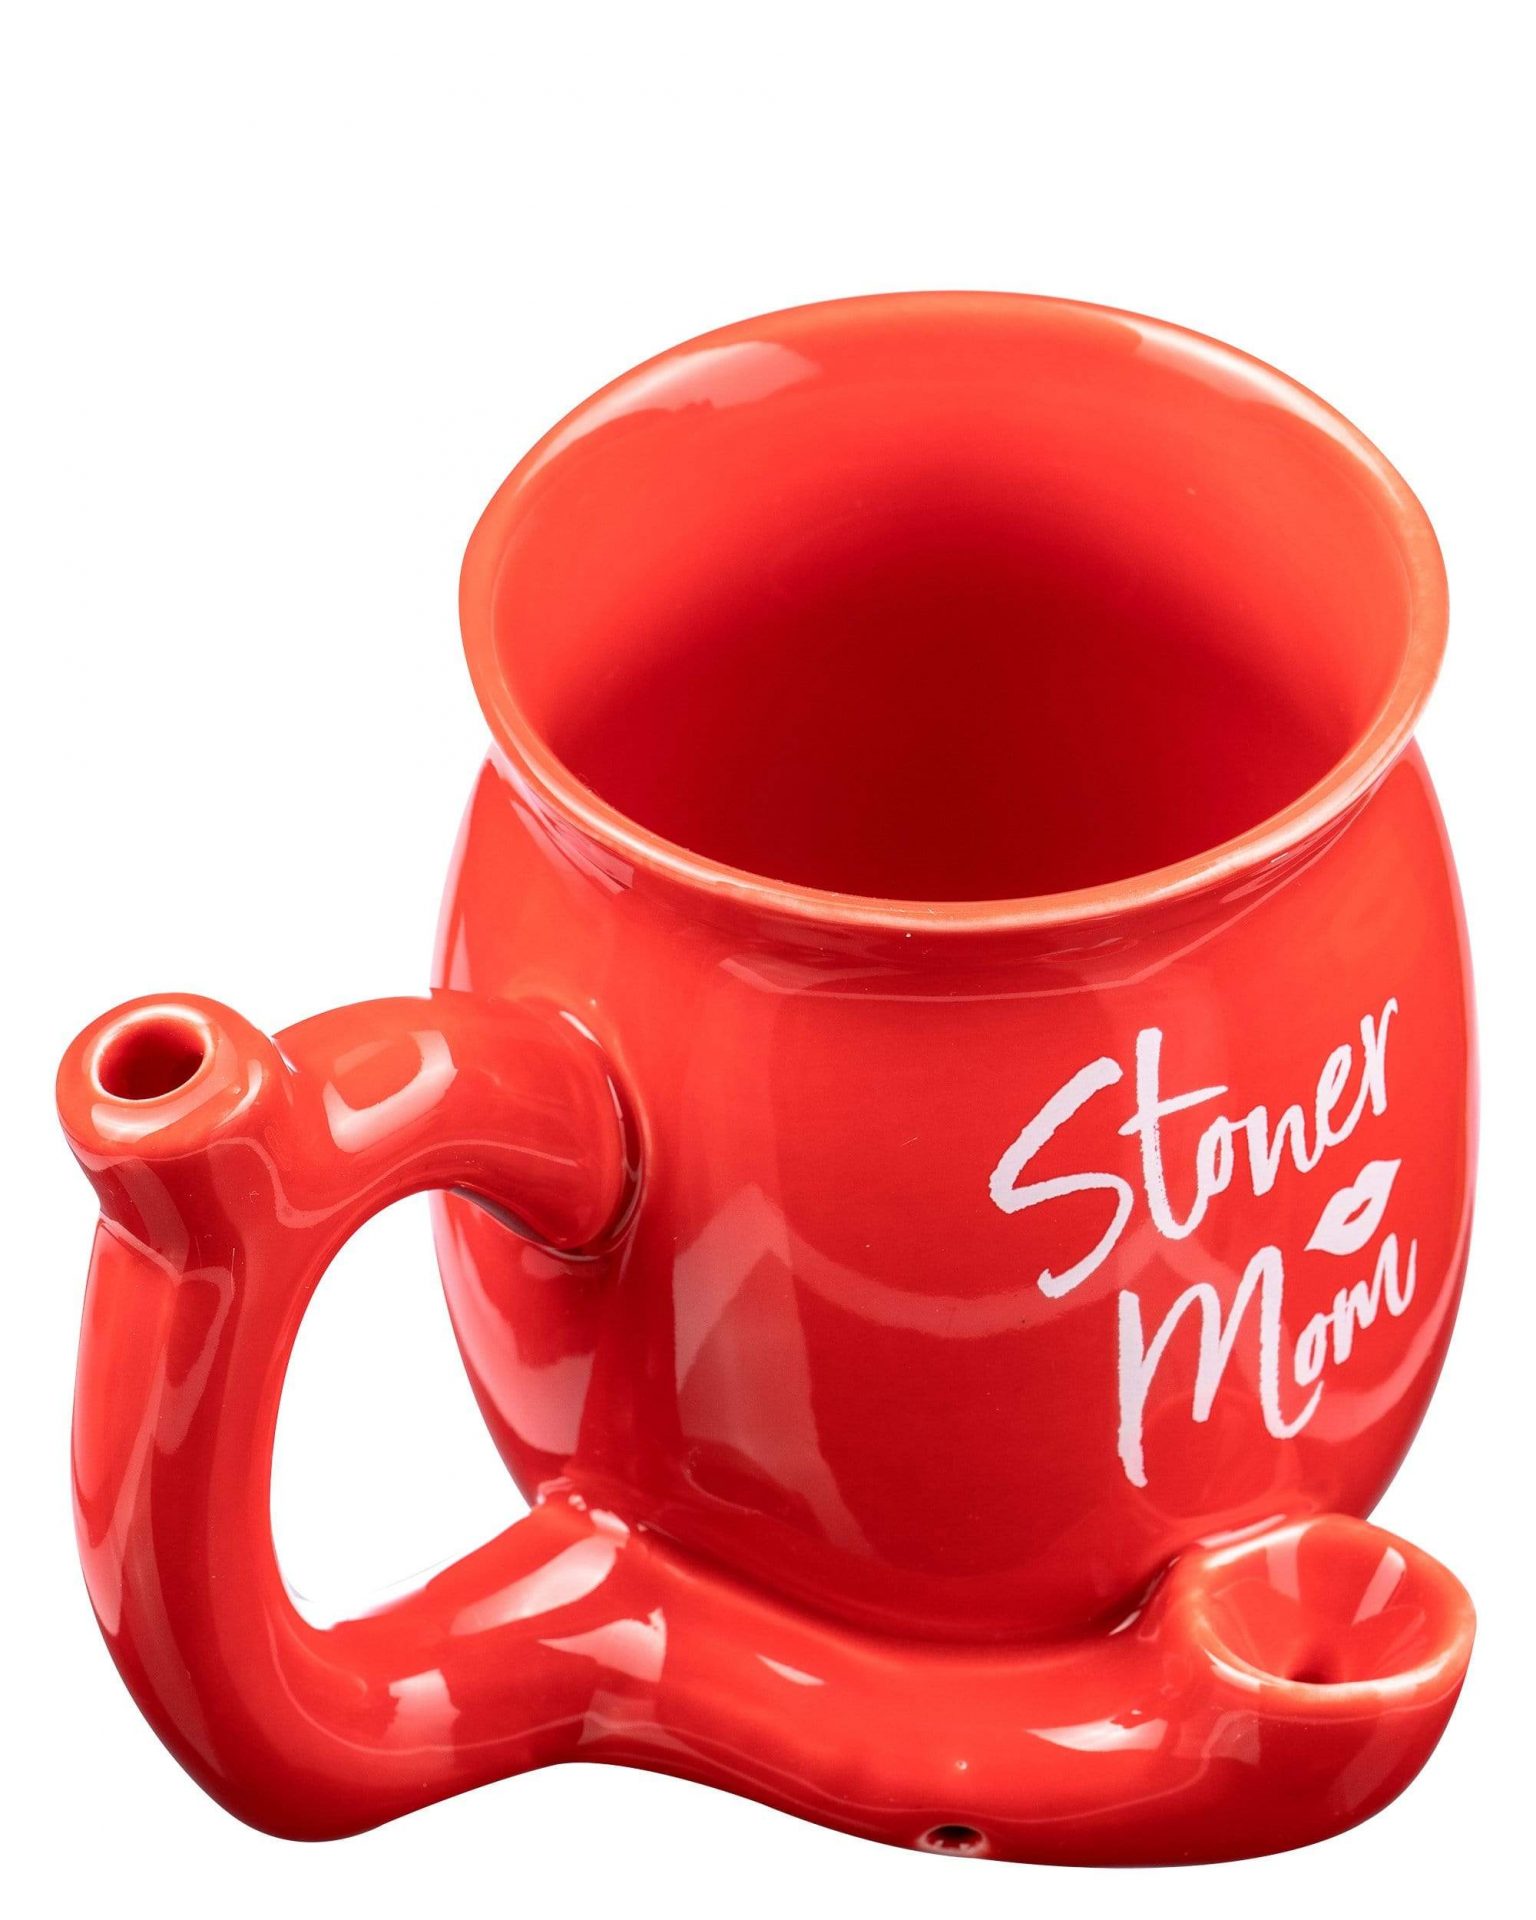 roast toast stoner mom small pipe mug hand pipe 15559391445066